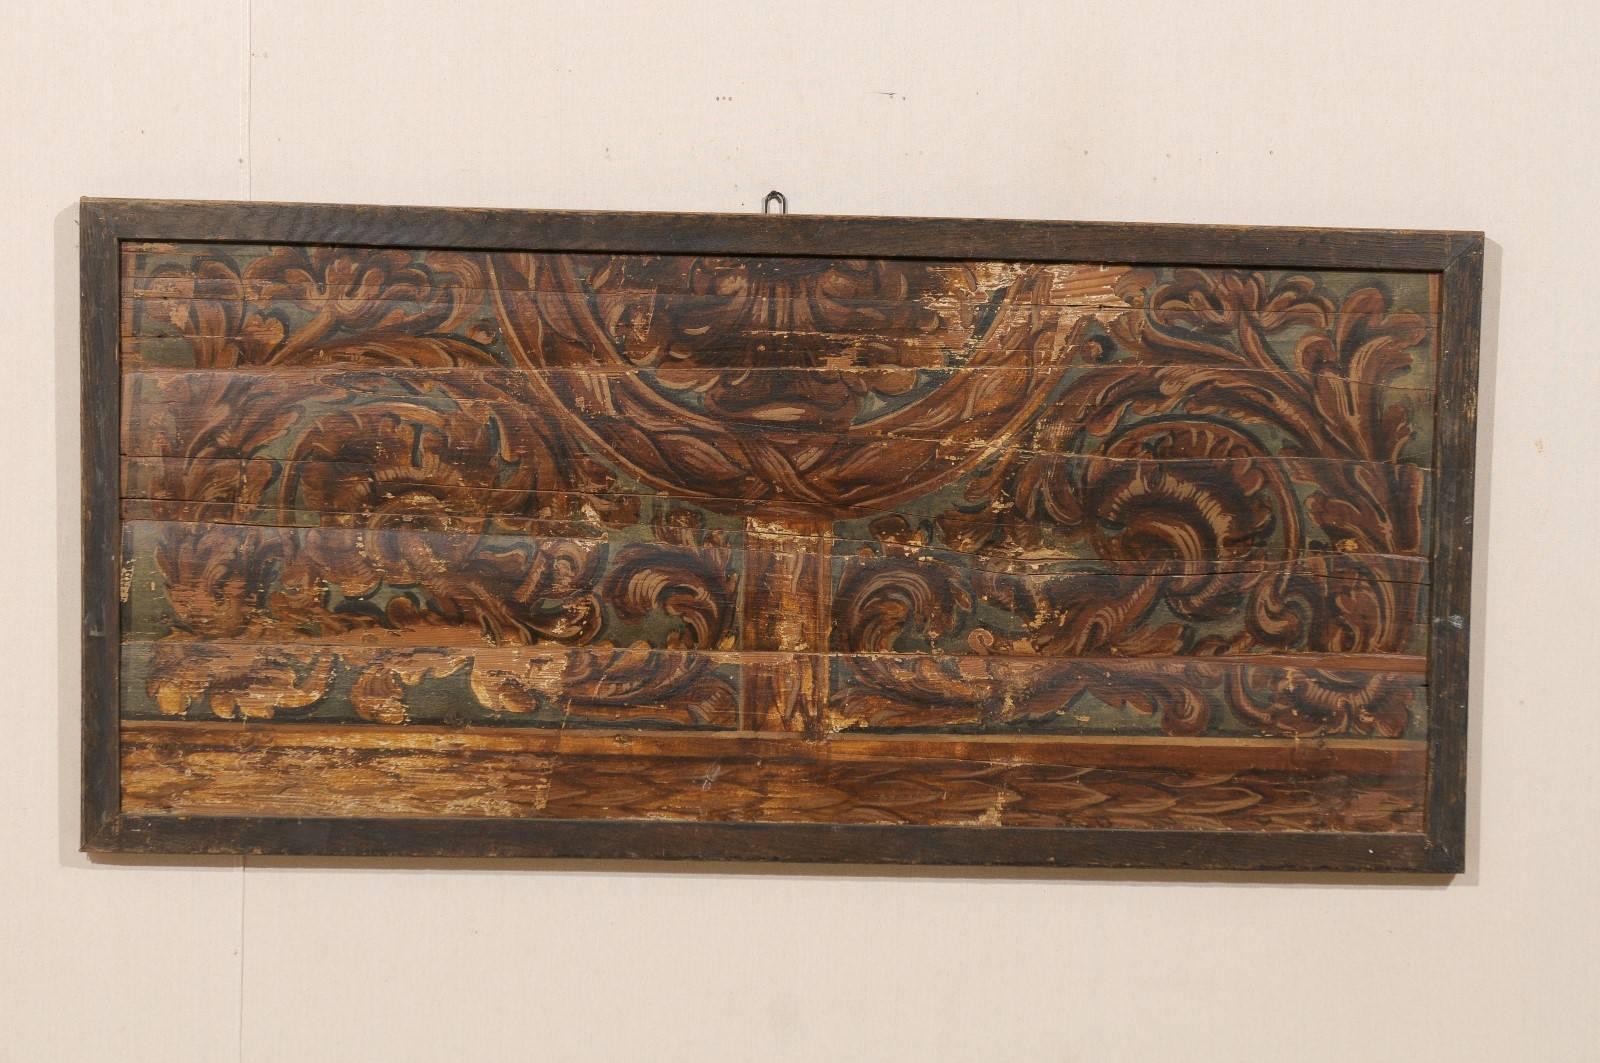 Eine italienische rechteckige Deckenplatte aus dem 18. Jahrhundert, die als Wanddekoration umfunktioniert wurde. Dieses großformatige, reich bemalte italienische Deckenpaneel aus Holz zeigt ein Dekor aus Rinceaux / Blattwerk. Dieses Stück ist in